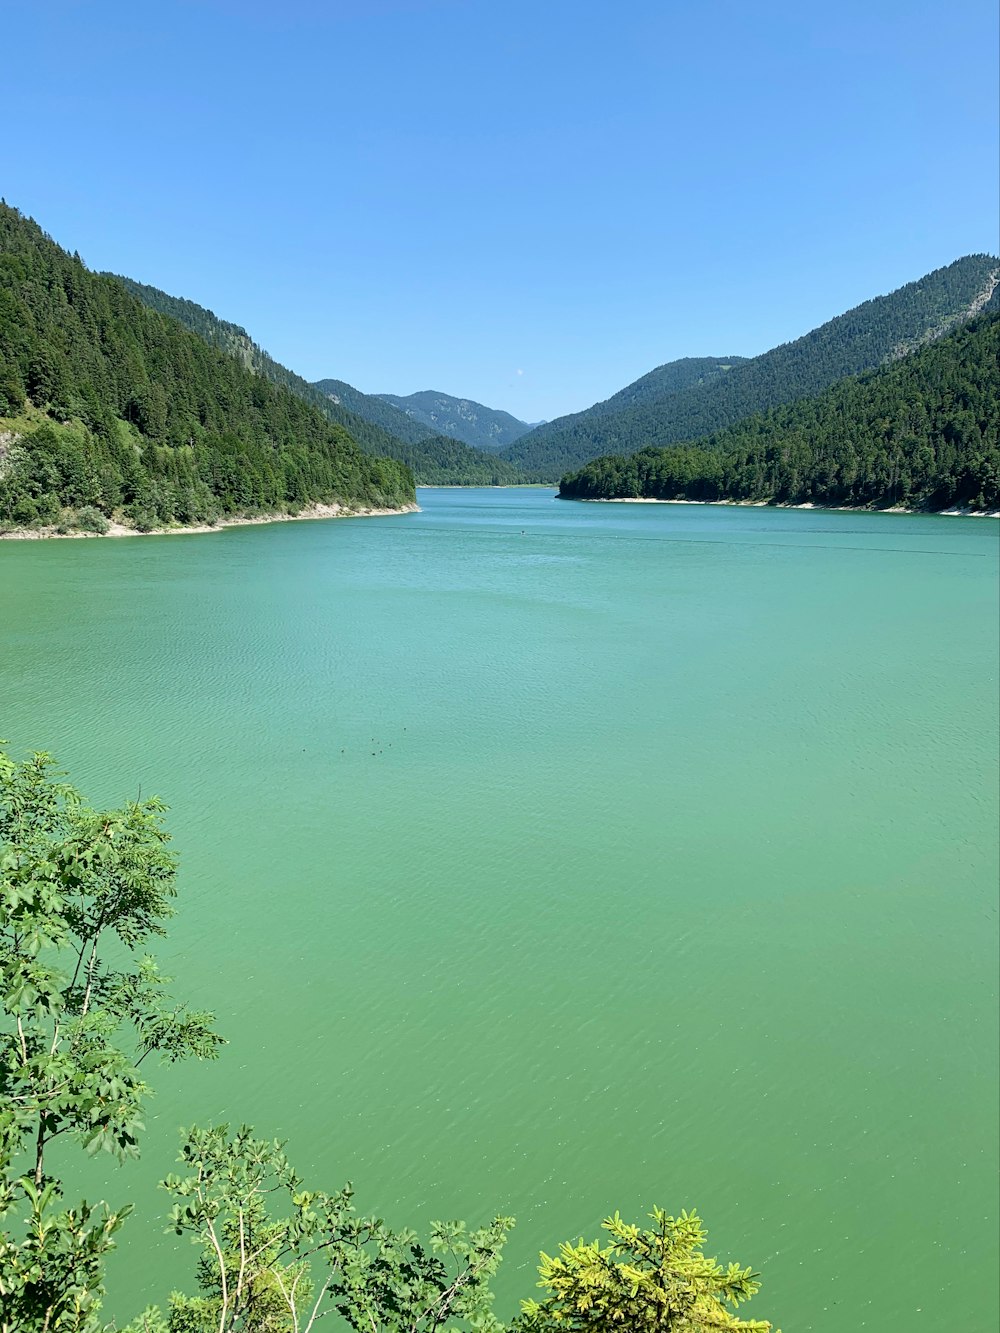 Lago verde rodeado de montañas verdes durante el día